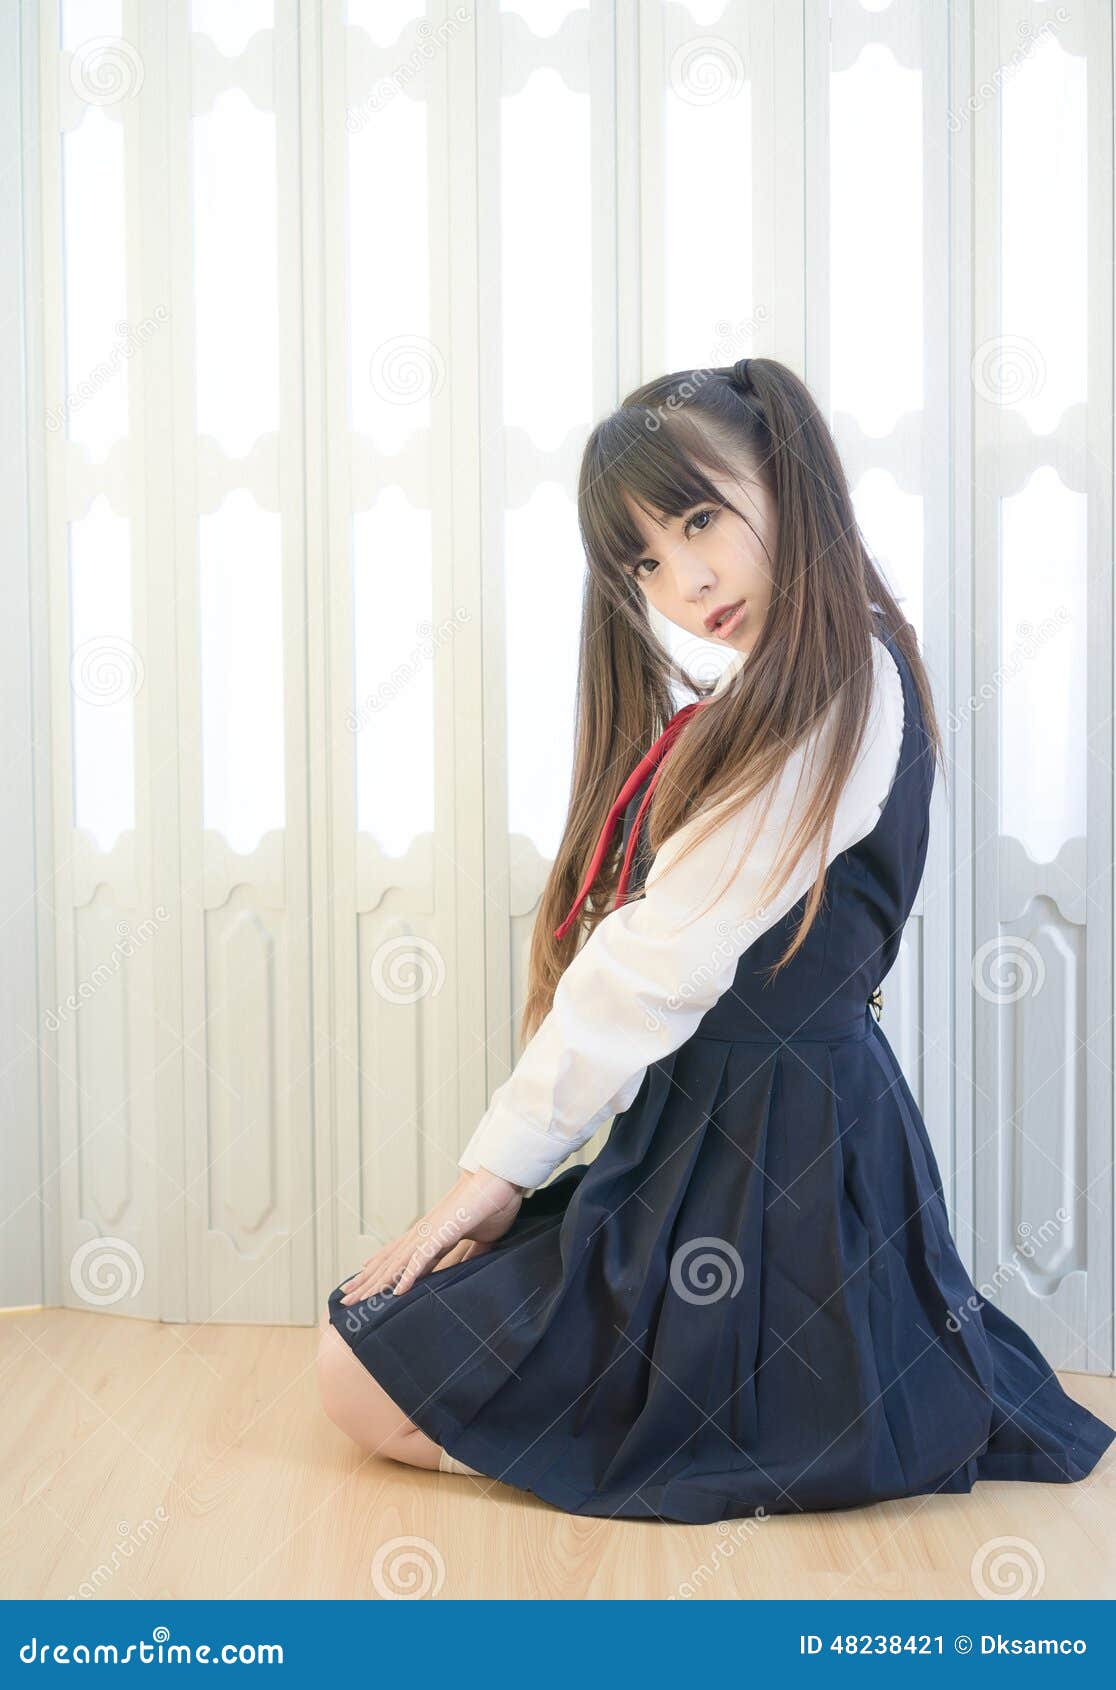 Da Menina Bonito Da Escola Do Estilo Japonês Mulher Sexy Home Interna Imagem De Stock Imagem 